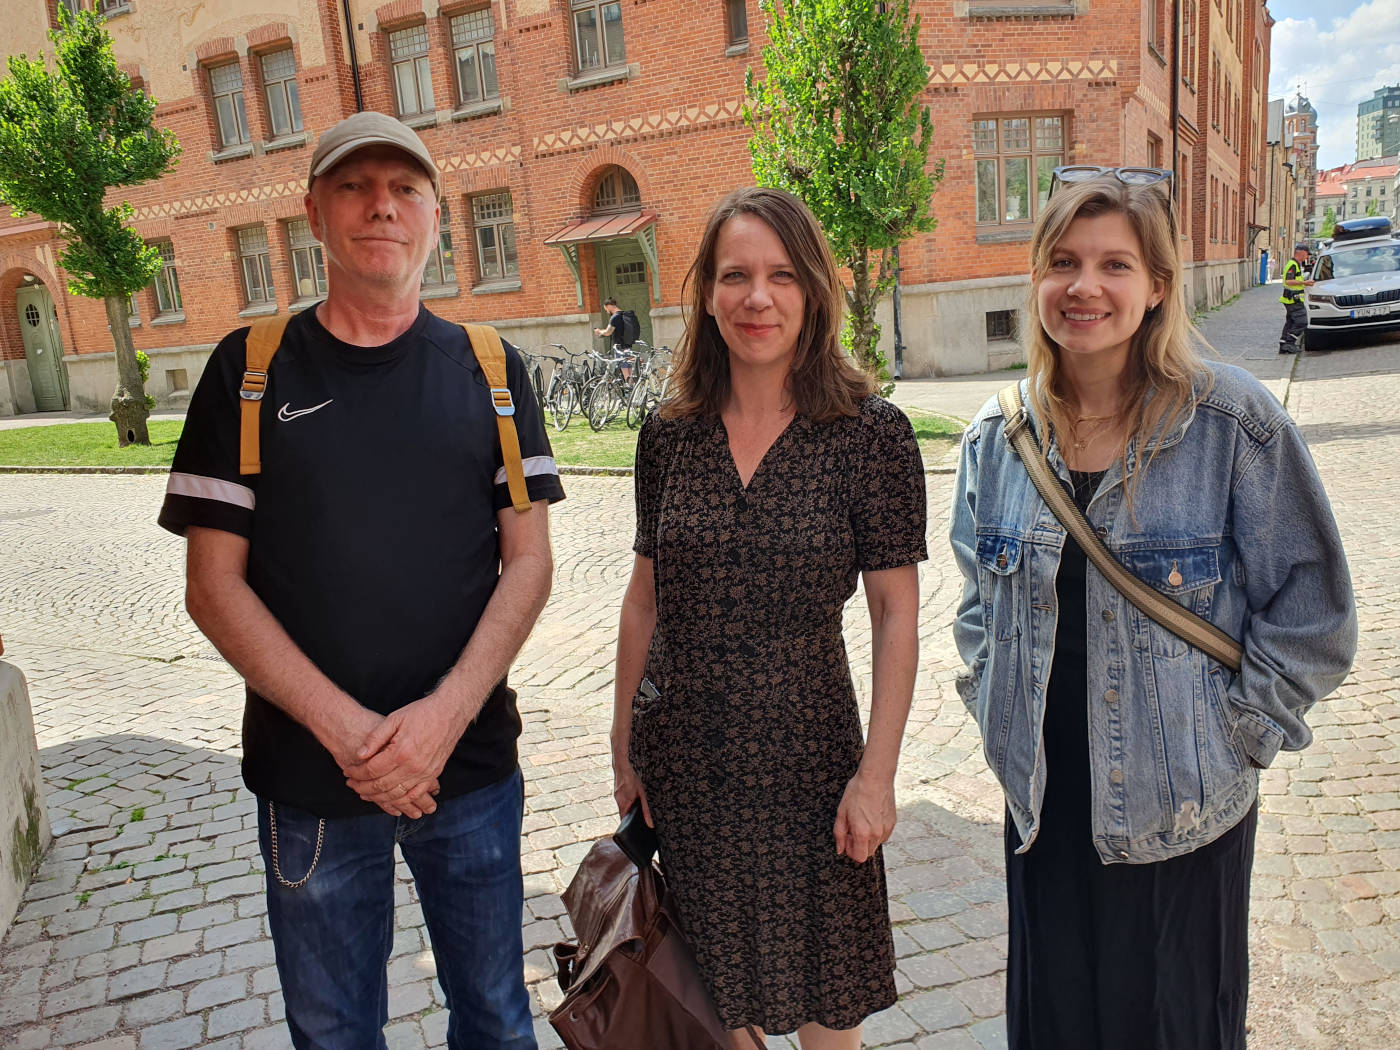 läsledarna, Andrea och Sofia från Göteborgs Litteraturhus, och Stefan från Sahlgrenska.